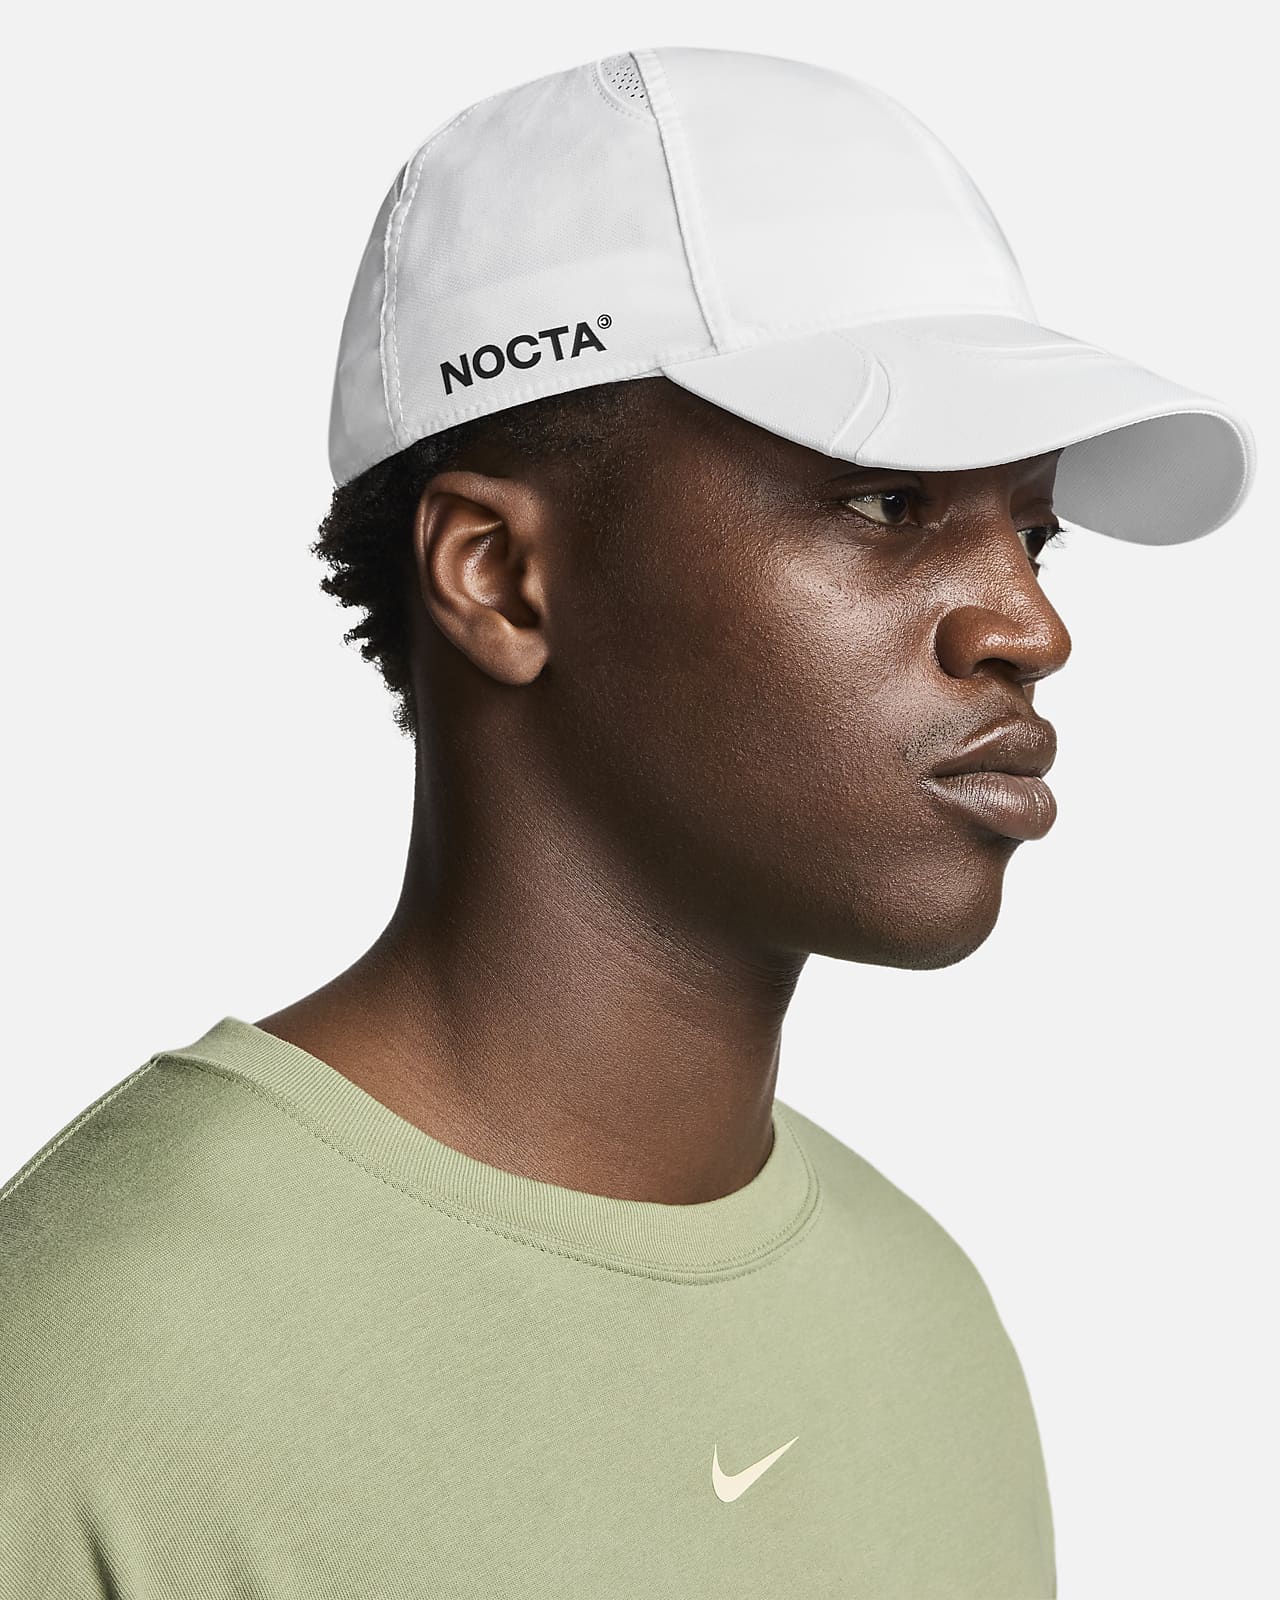 NOCTA Cap. Nike.com